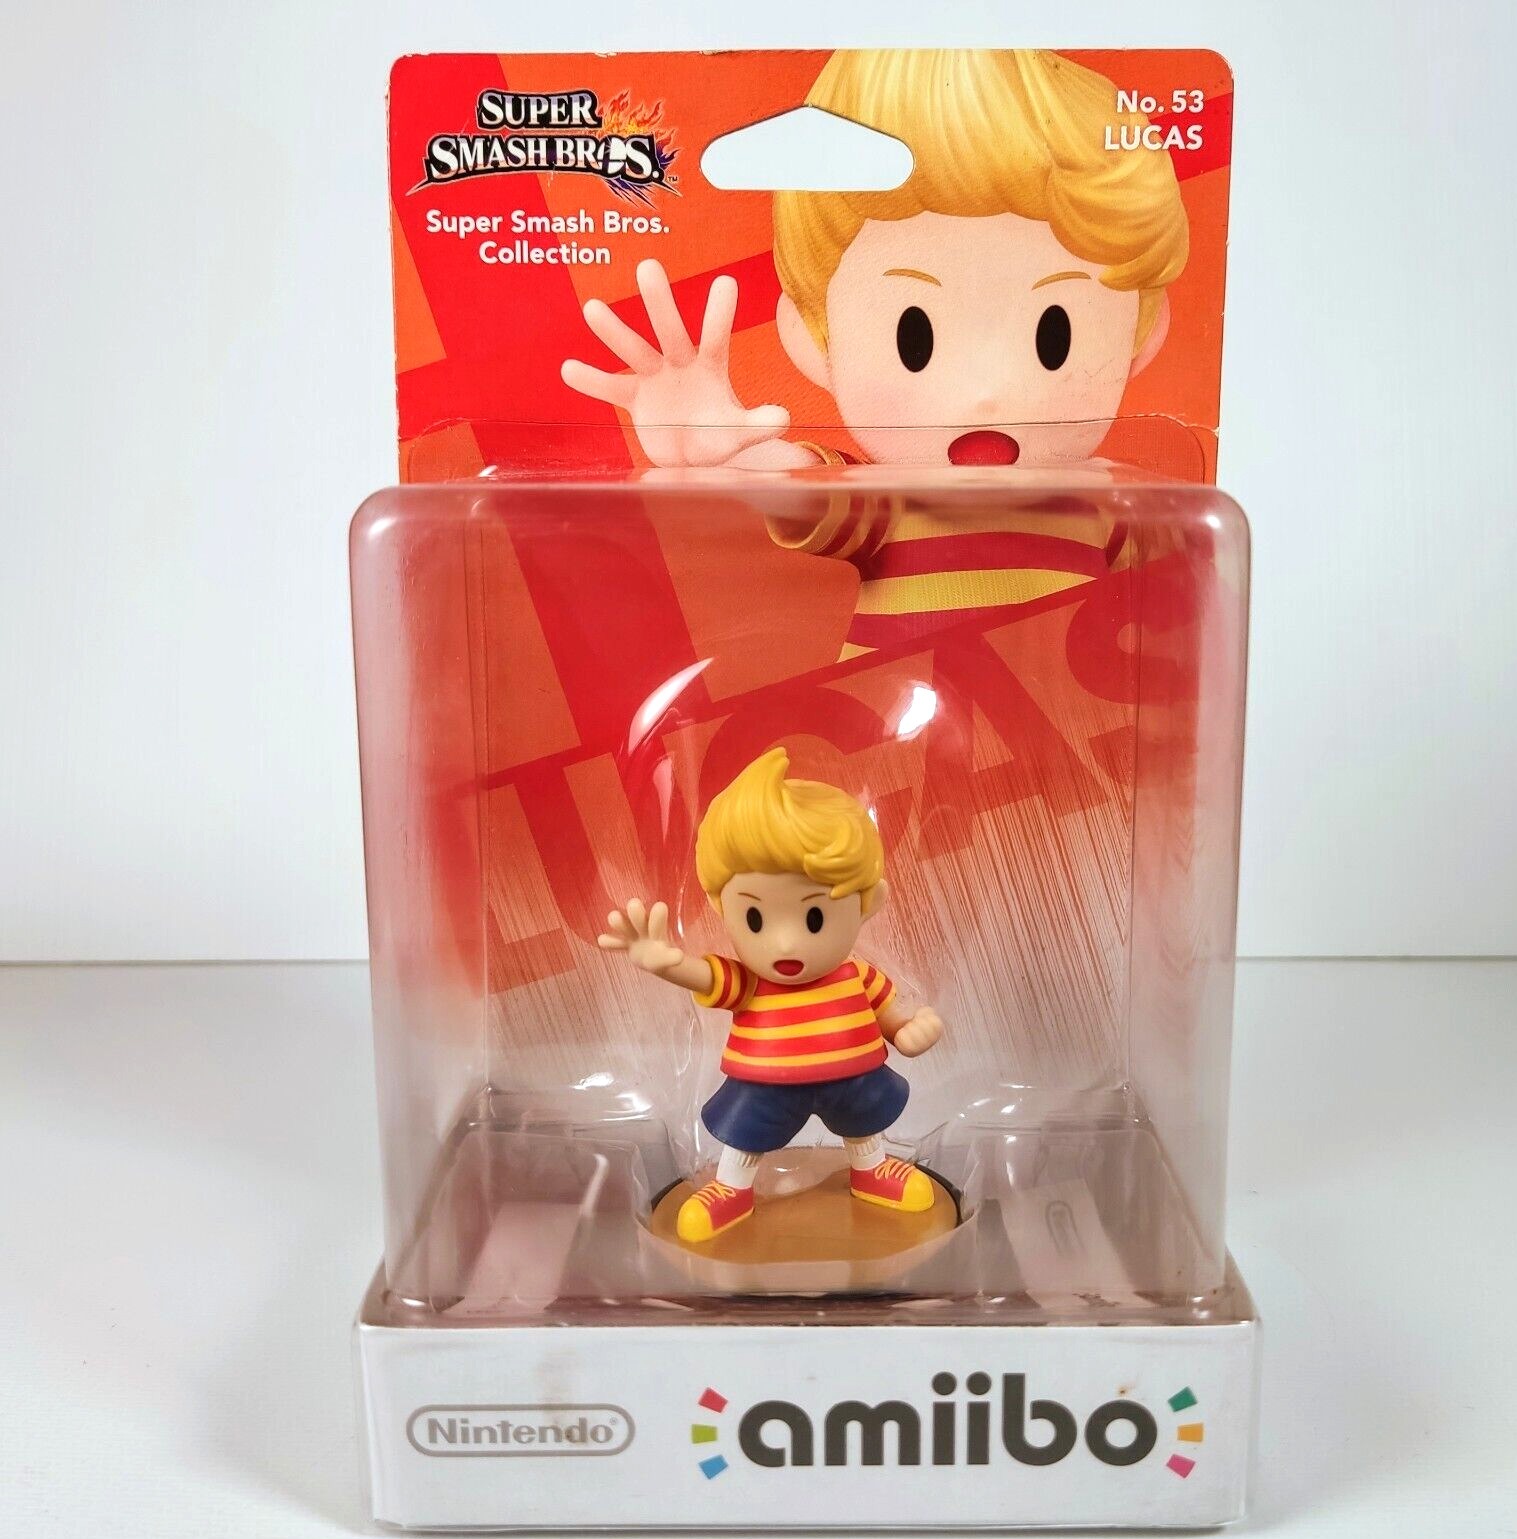 Lucas Amiibo No.53 - Super Smash Bros Collection Nintendo